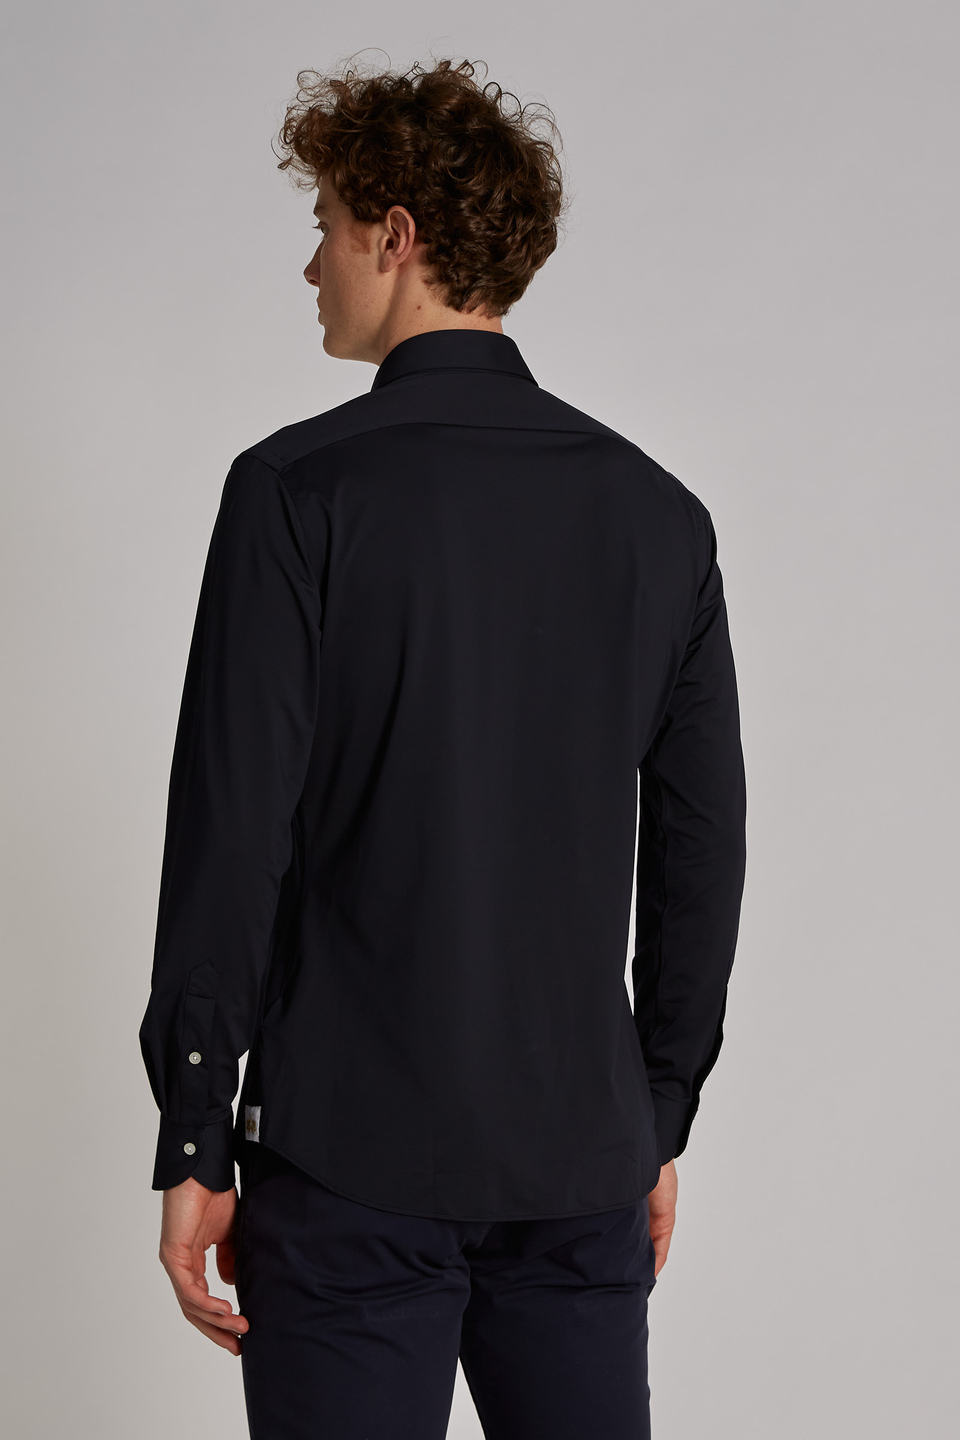 Camisa hombre algodón manga larga corte custom - La Martina - Official Online Shop